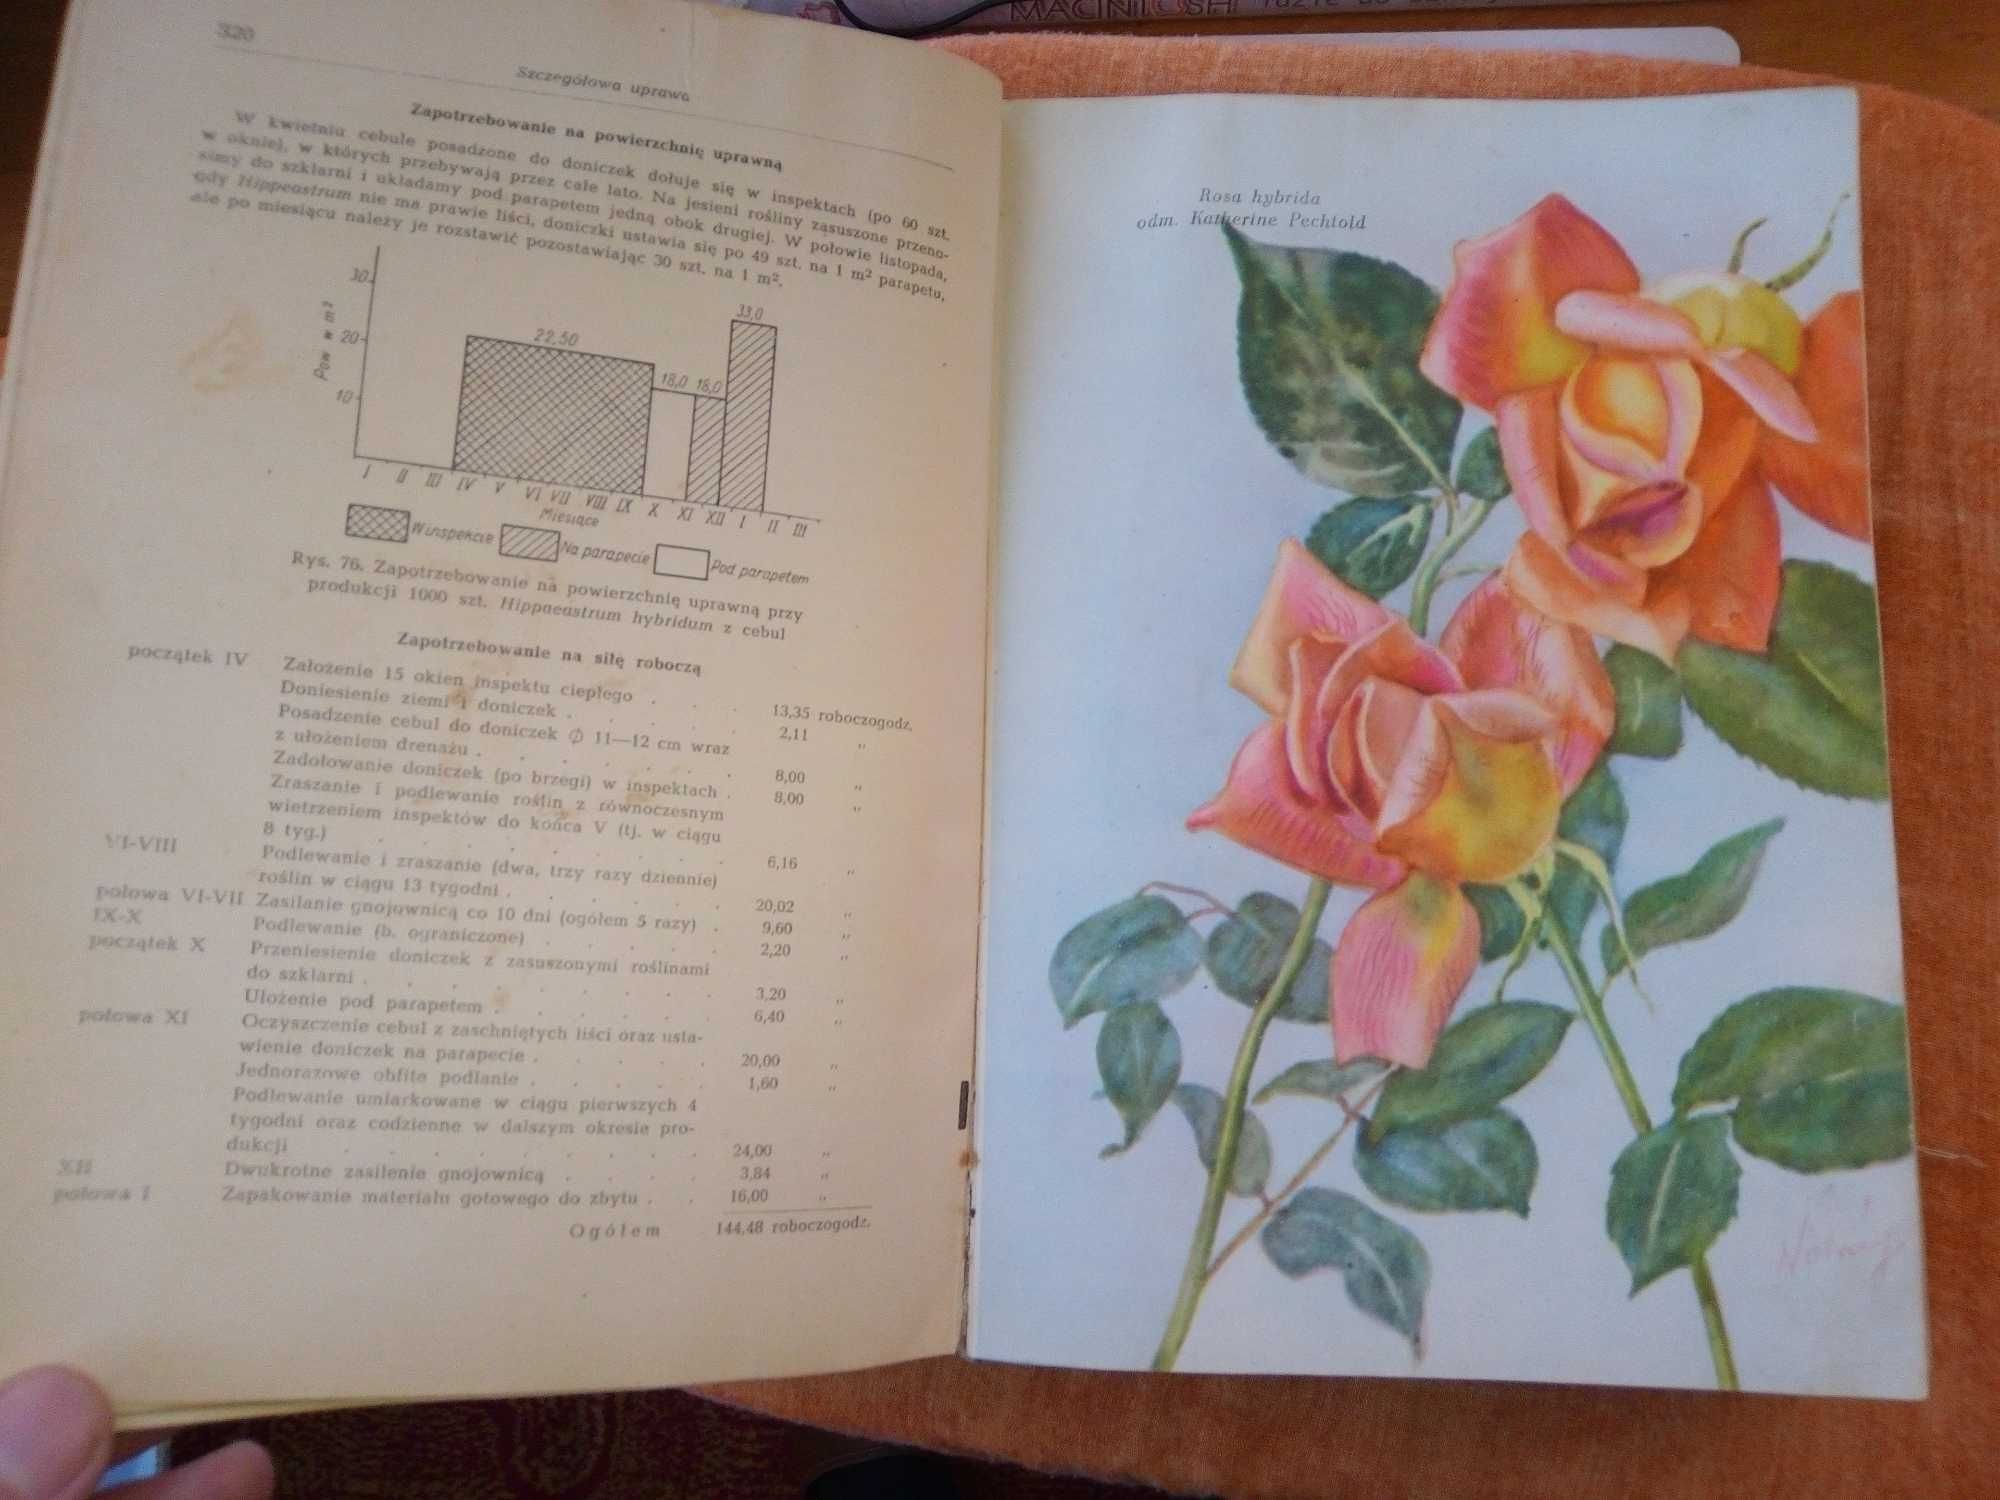 Uprawa roślin ozdobnych - S Wóycicki (1957) 1040 stron